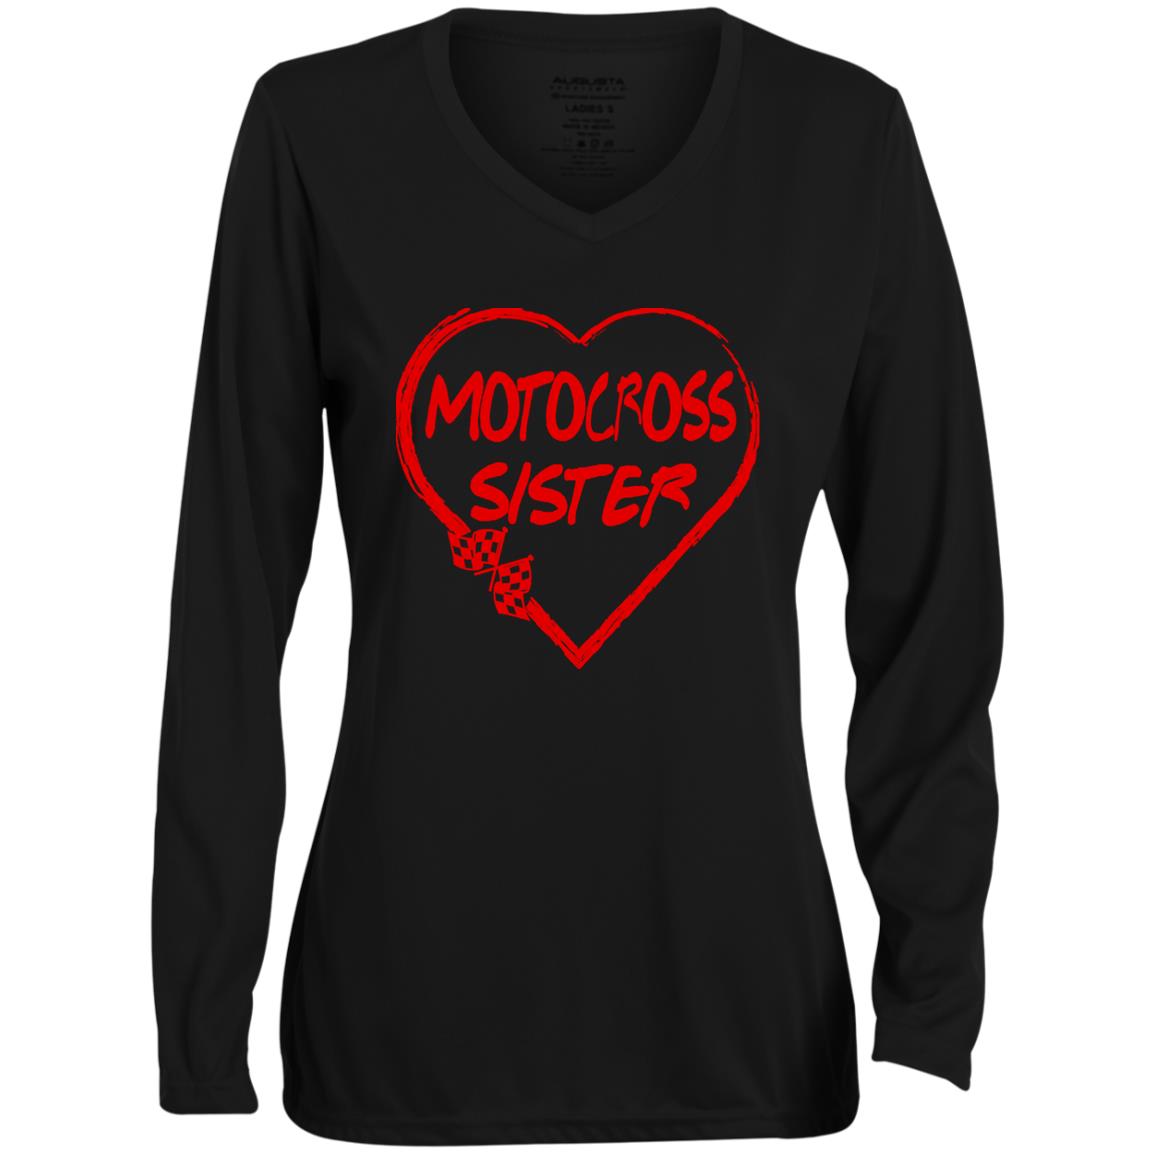 Motocross Sister Heart Ladies' Moisture-Wicking Long Sleeve V-Neck Tee